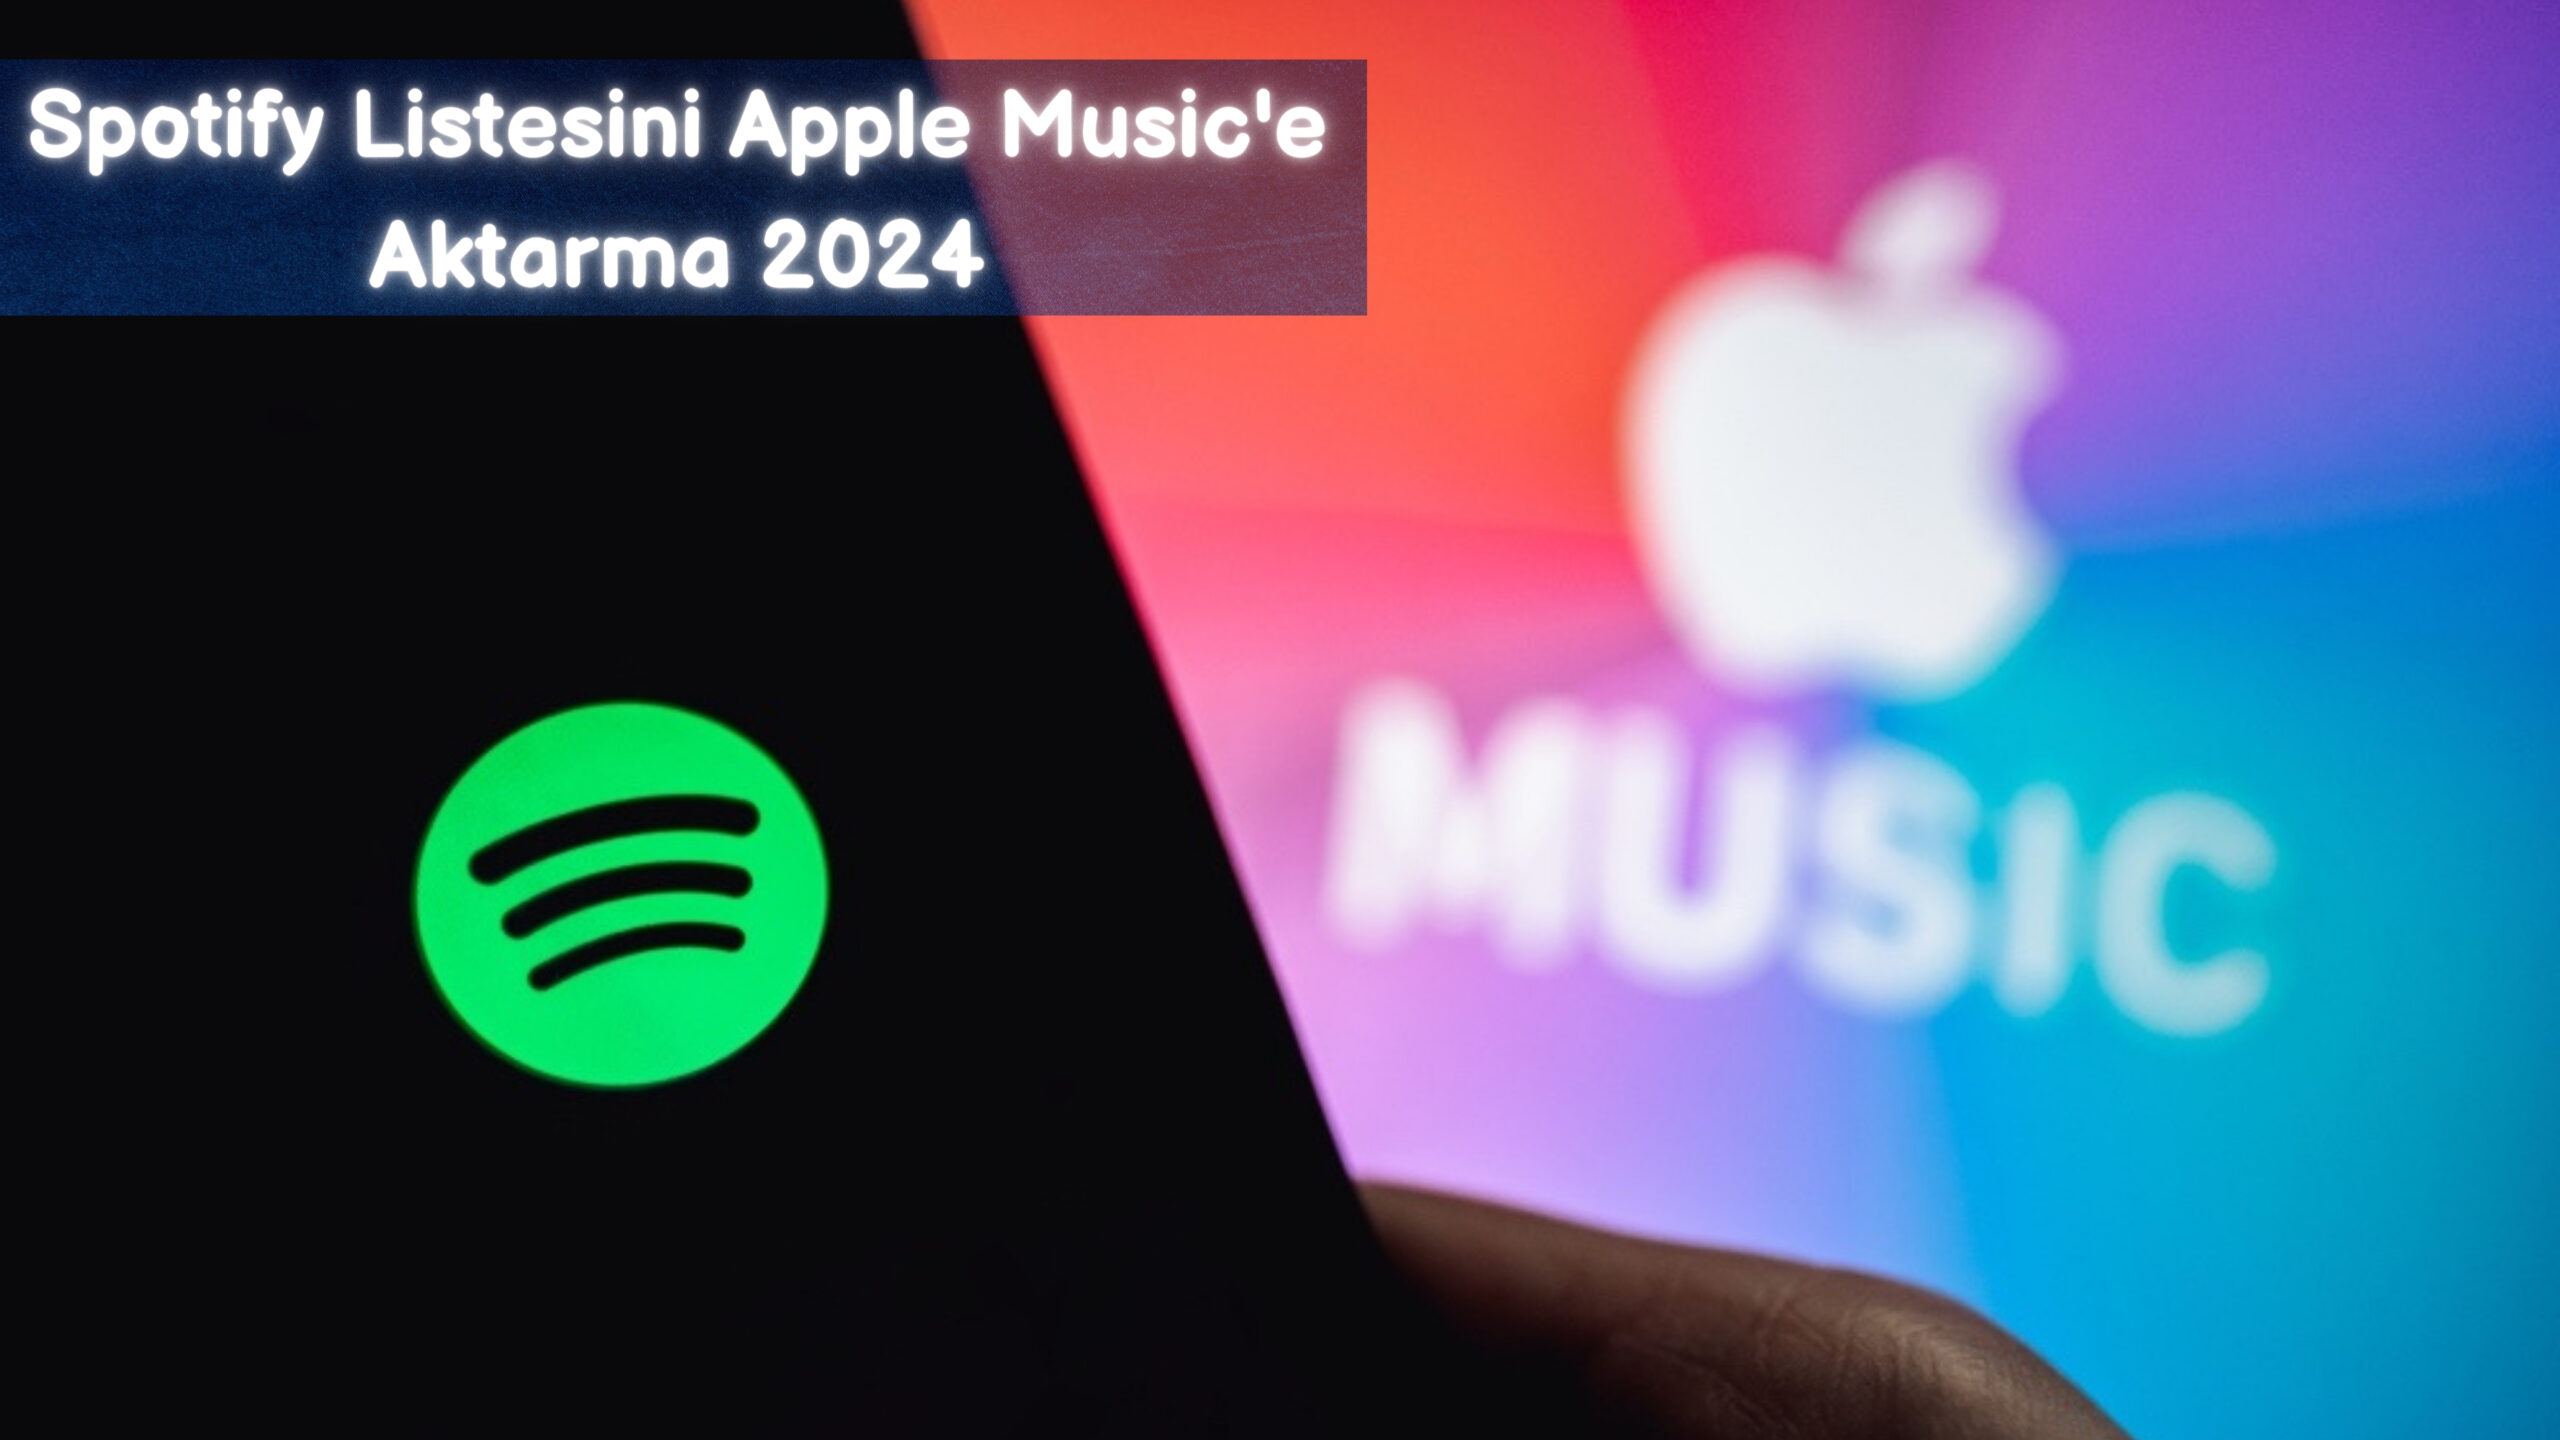 Spotify Listesini Apple Music'e Aktarma 2024